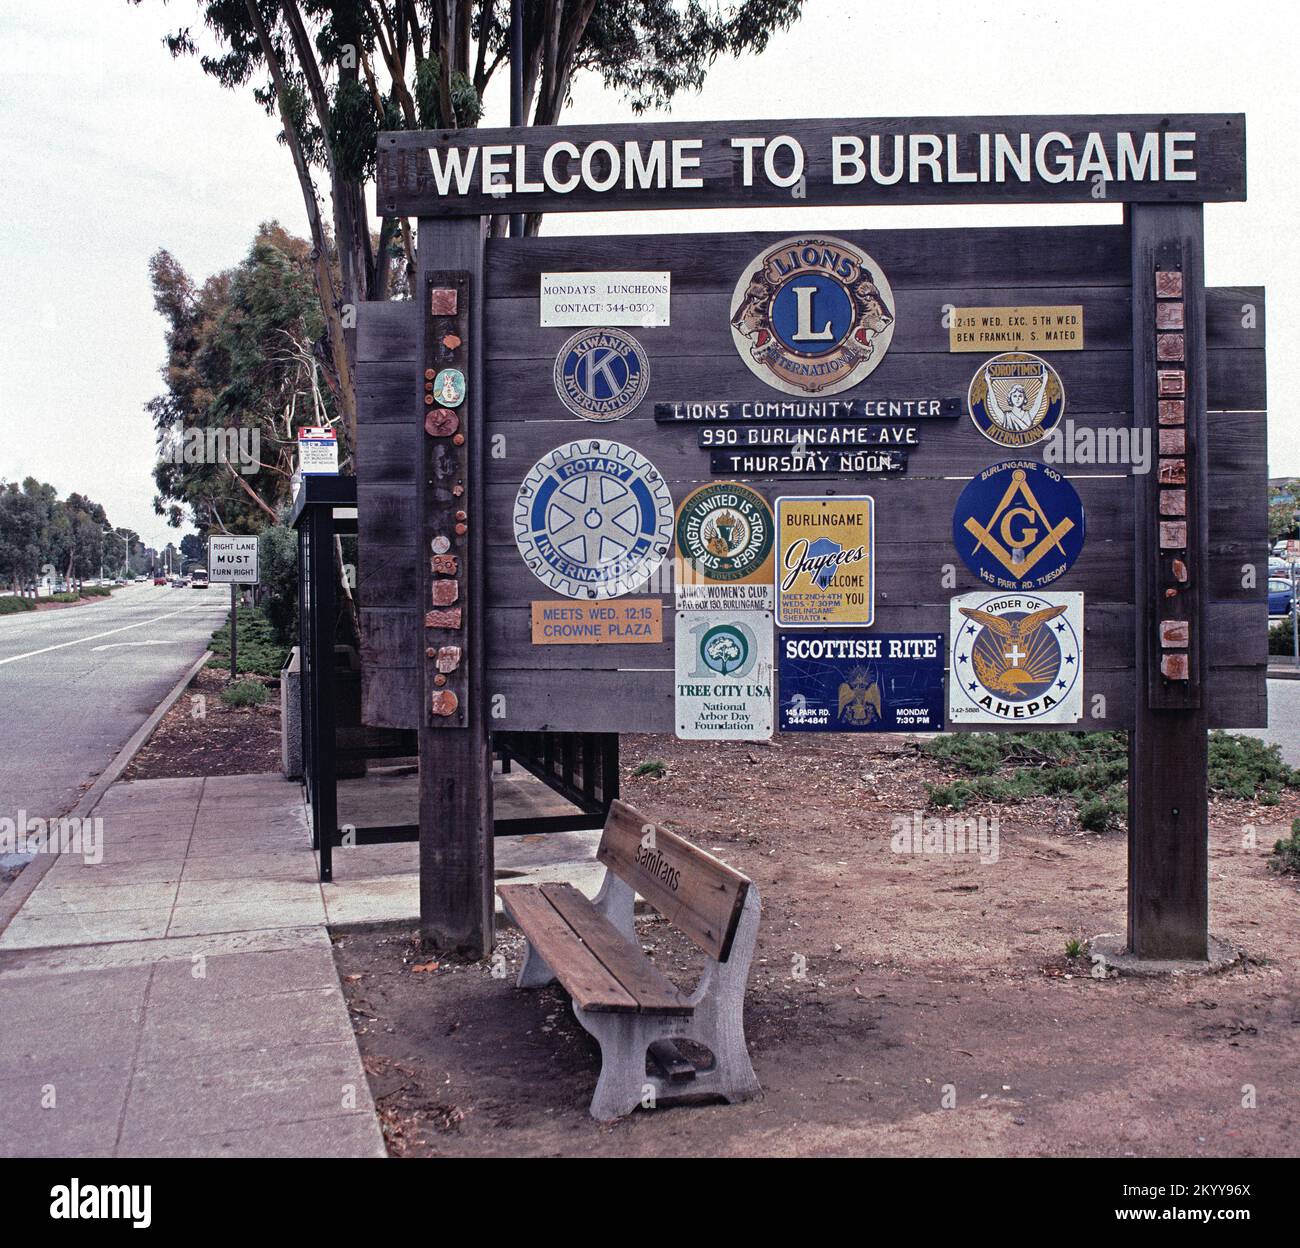 Benvenuti alla fermata dell'autobus Burlingame Samtrans, California, 1996 Foto Stock